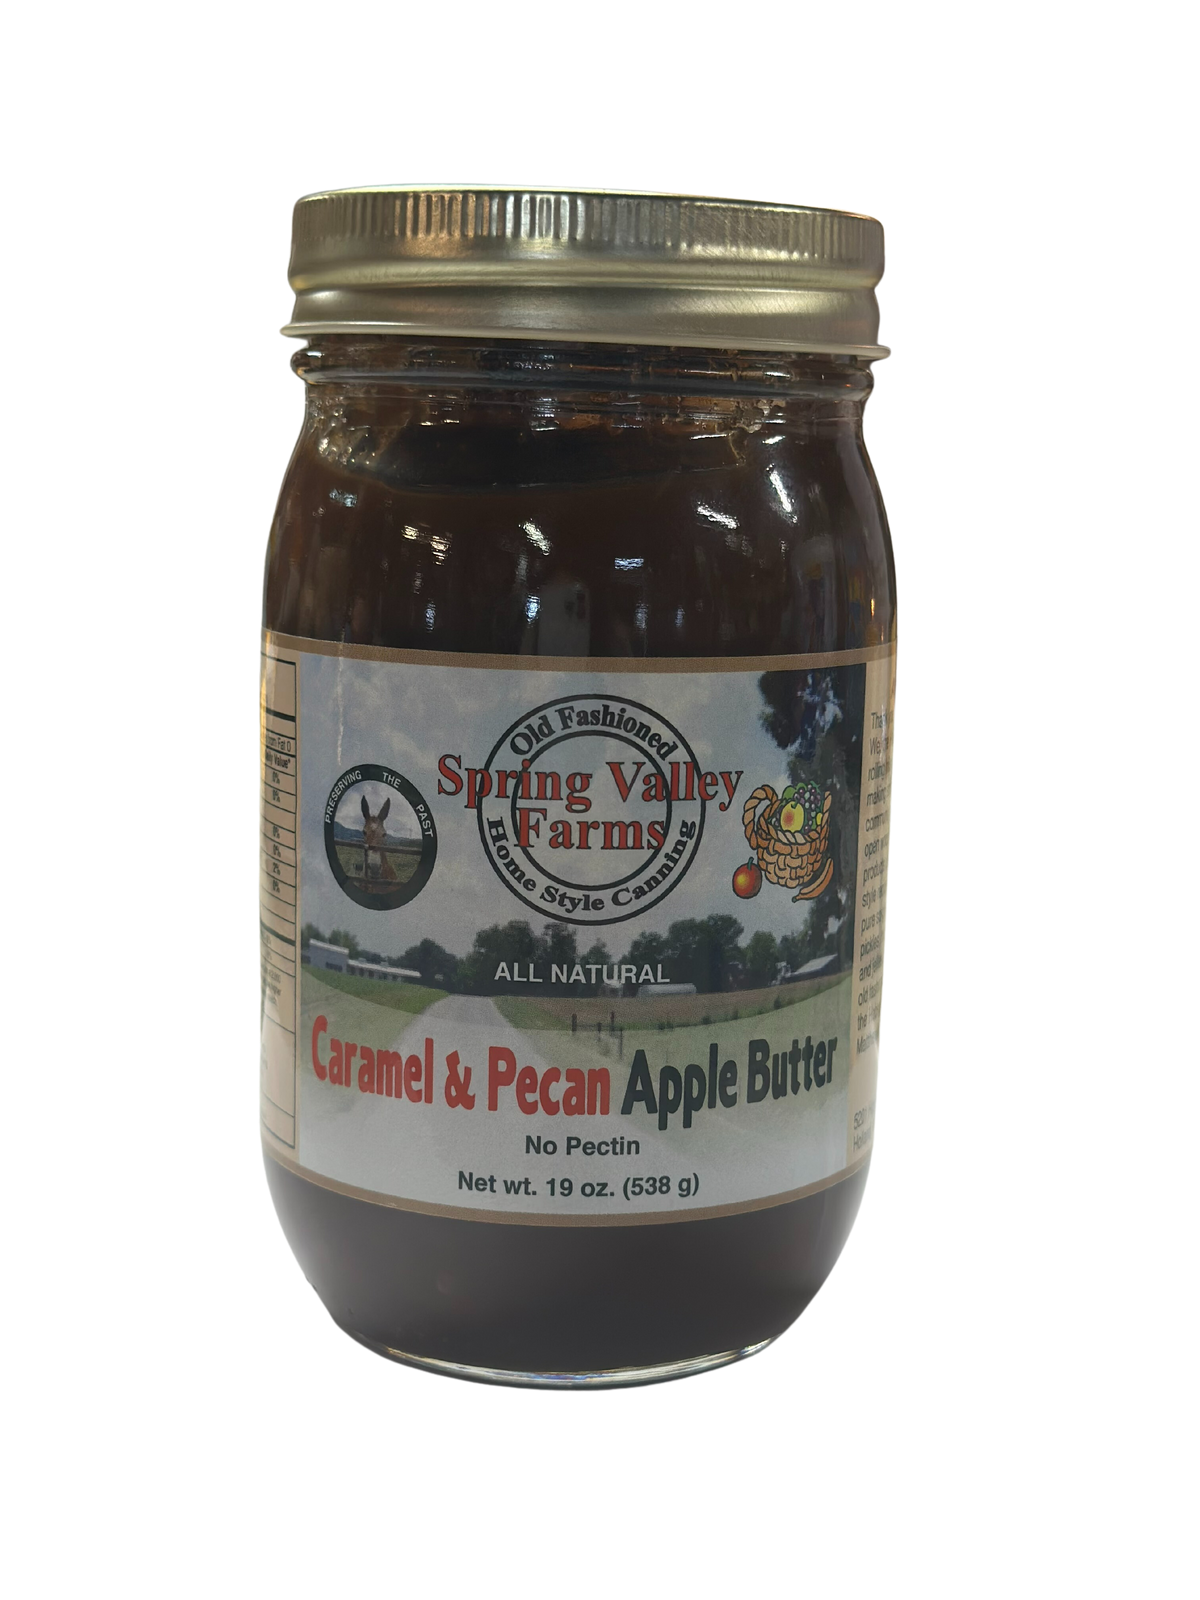 Spring Valley Farms Caramel & Pecan Apple Butter